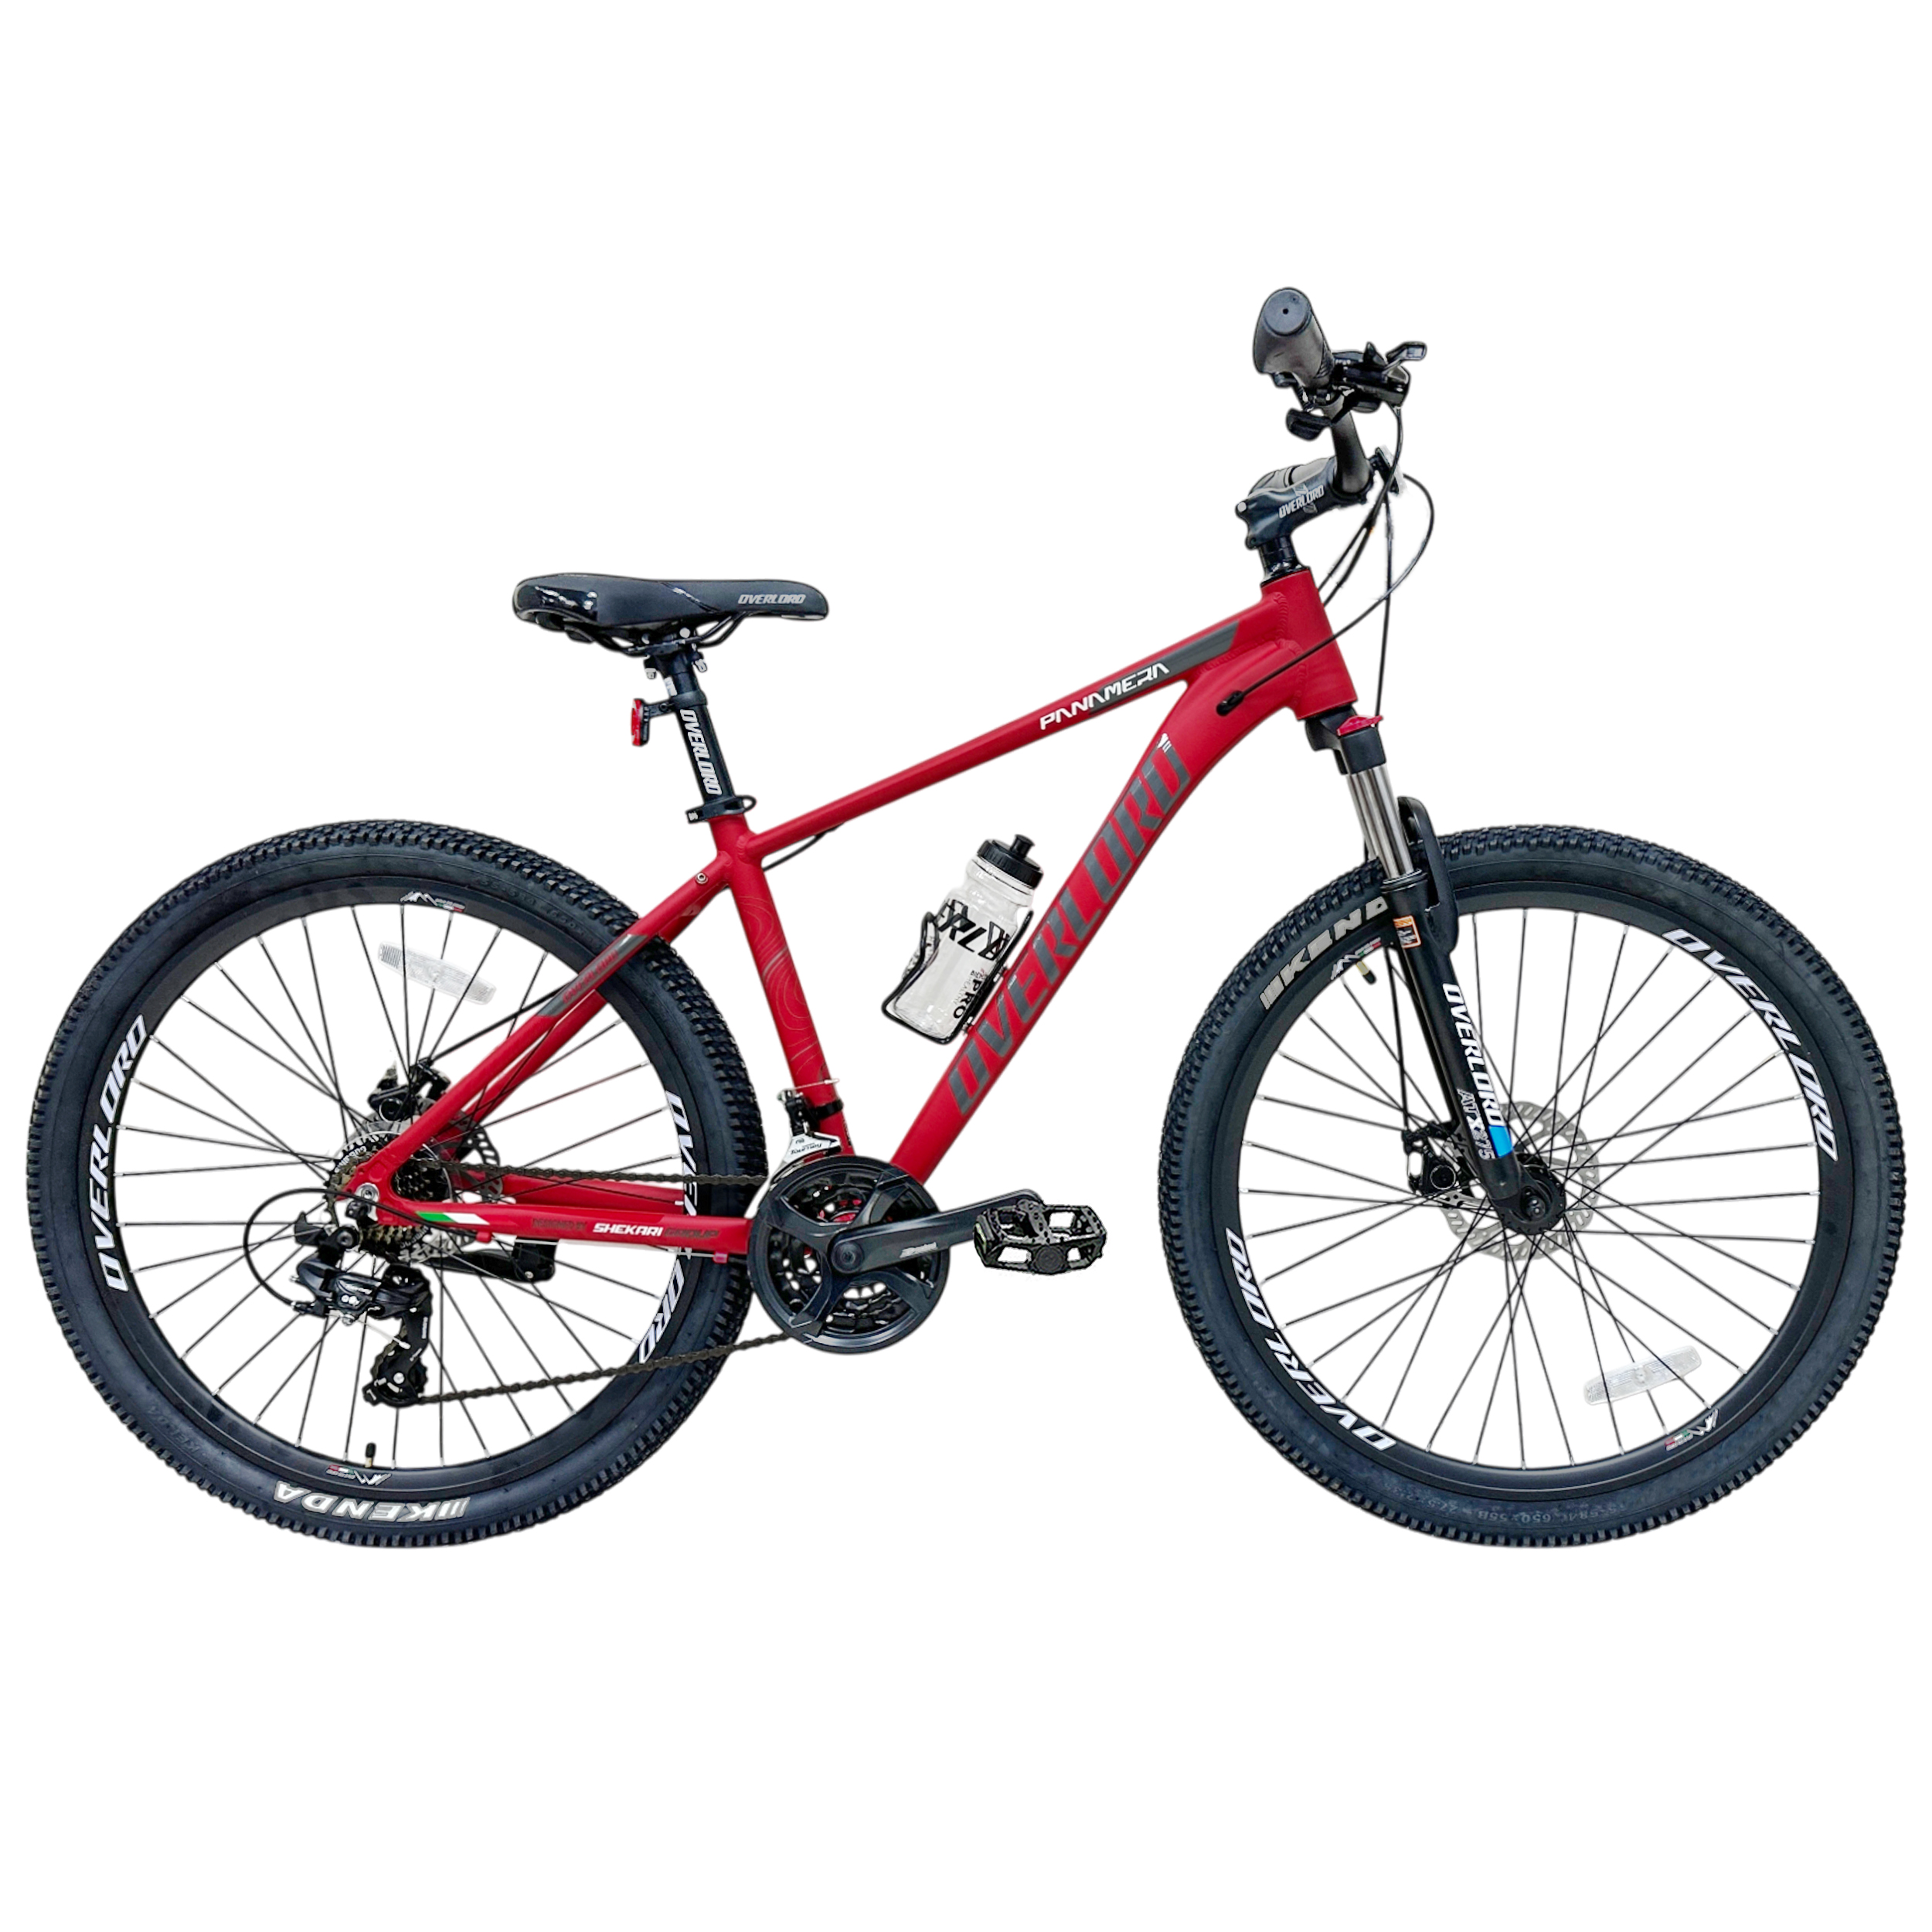 نکته خرید - قیمت روز دوچرخه کوهستان اورلورد مدل PANAMERA SE 1.0D سایز طوقه 27.5 خرید